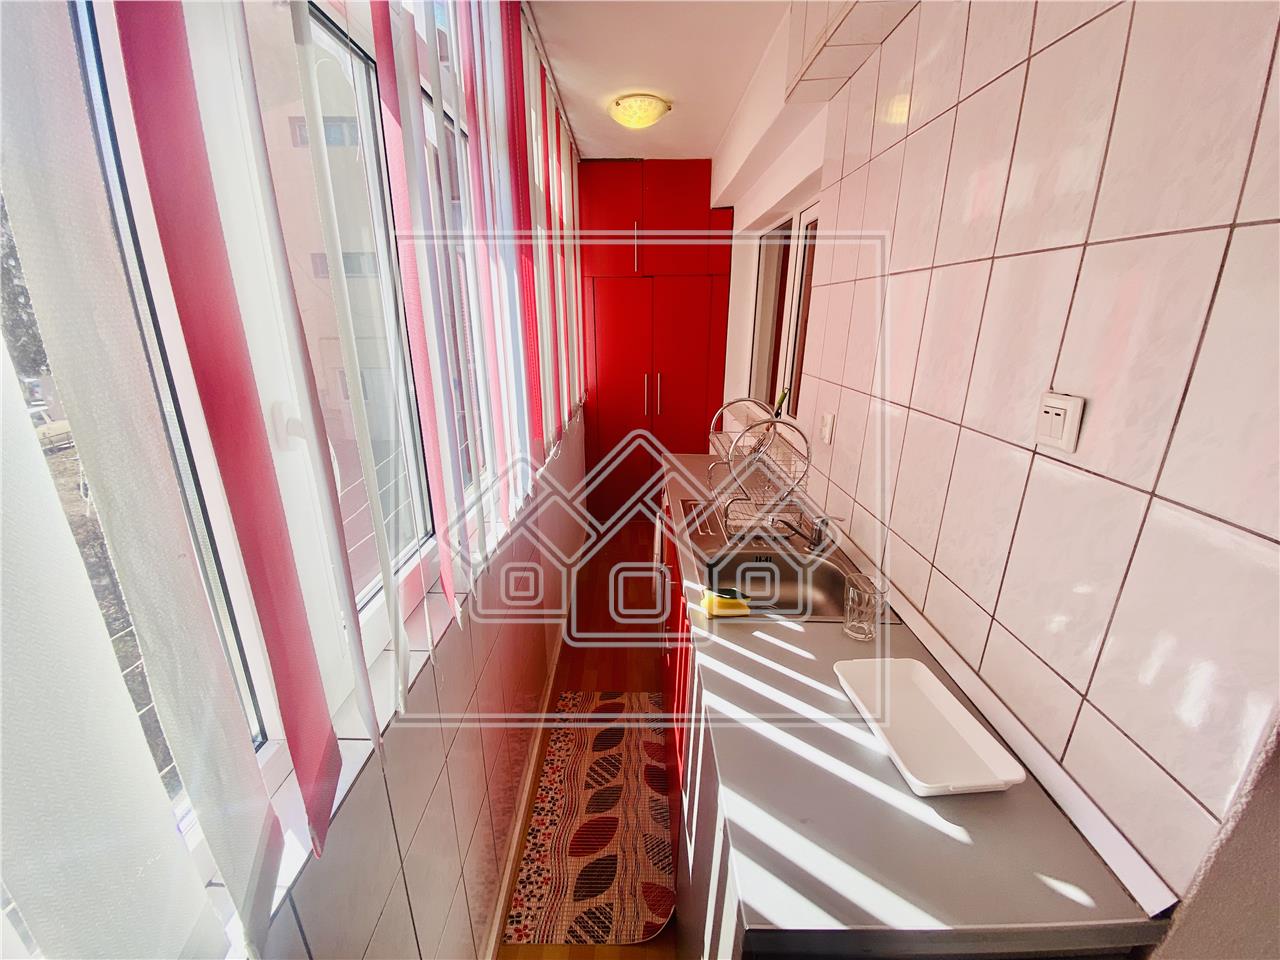 Wohnung zum Verkauf in Sibiu - 3 Zimmer, Balkon und Keller - Aurea Val